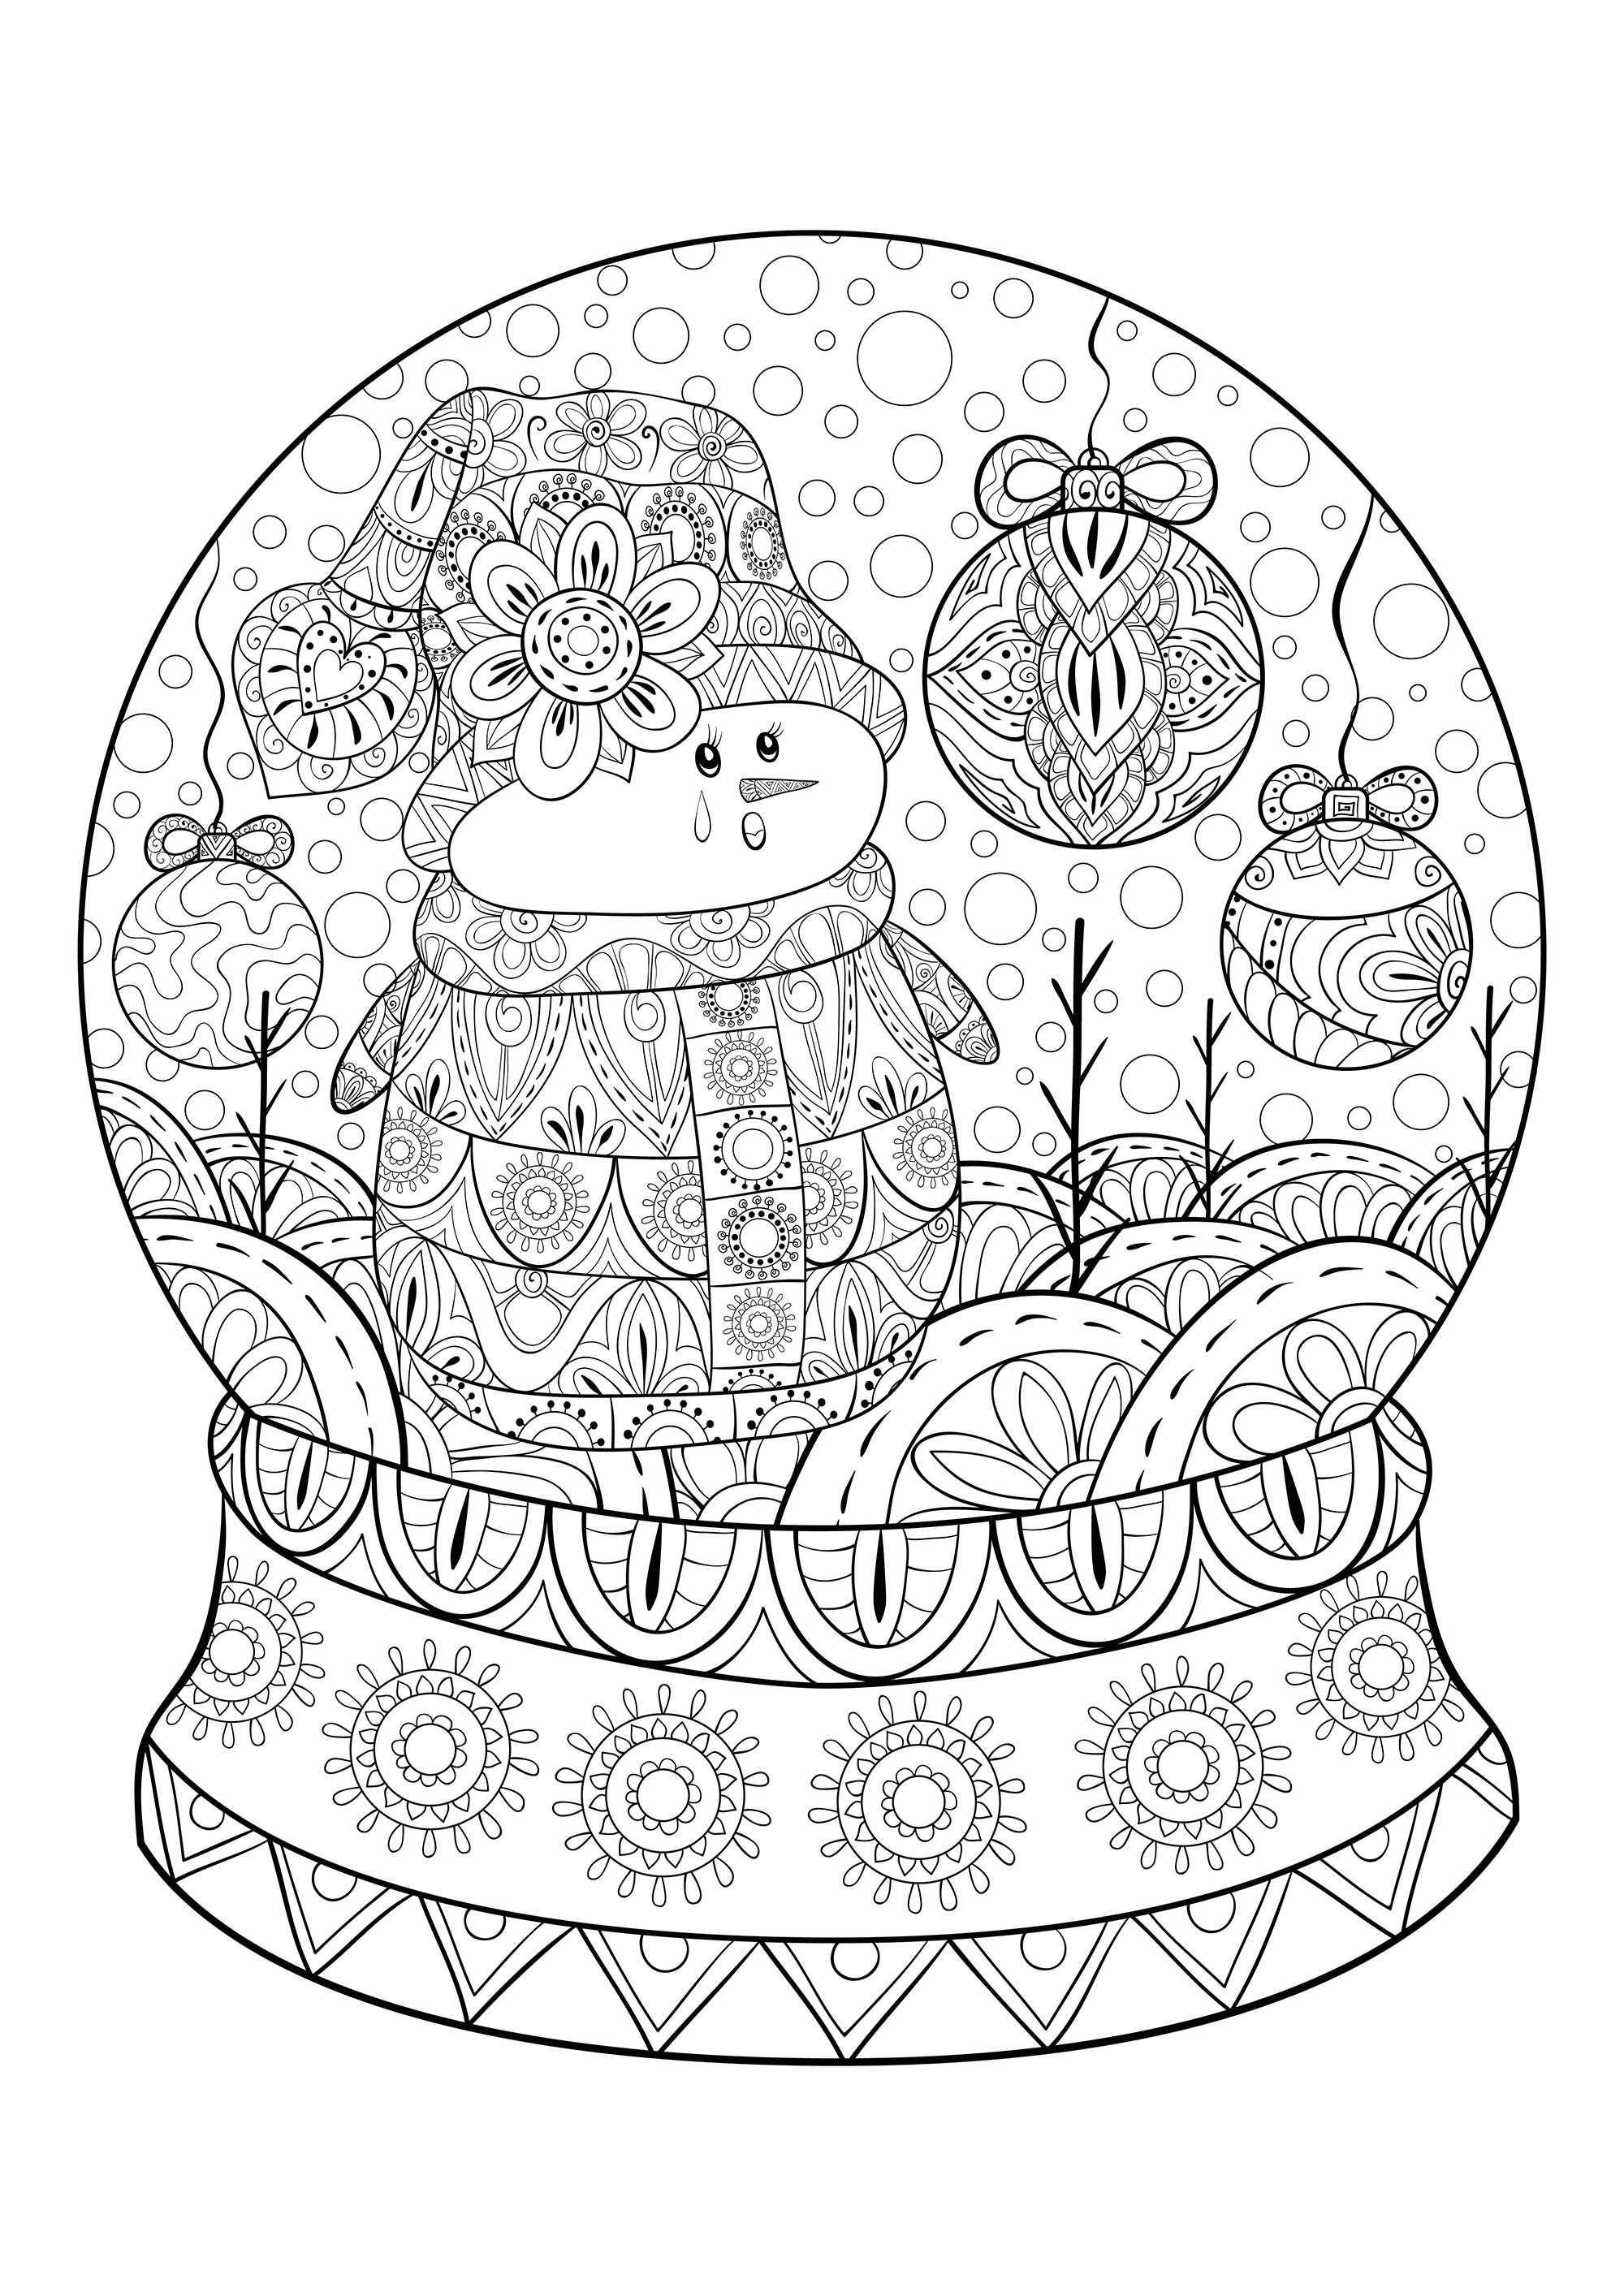 Un bonhomme de neige dans une boule de Noël, avec nombreux éléments et motifs